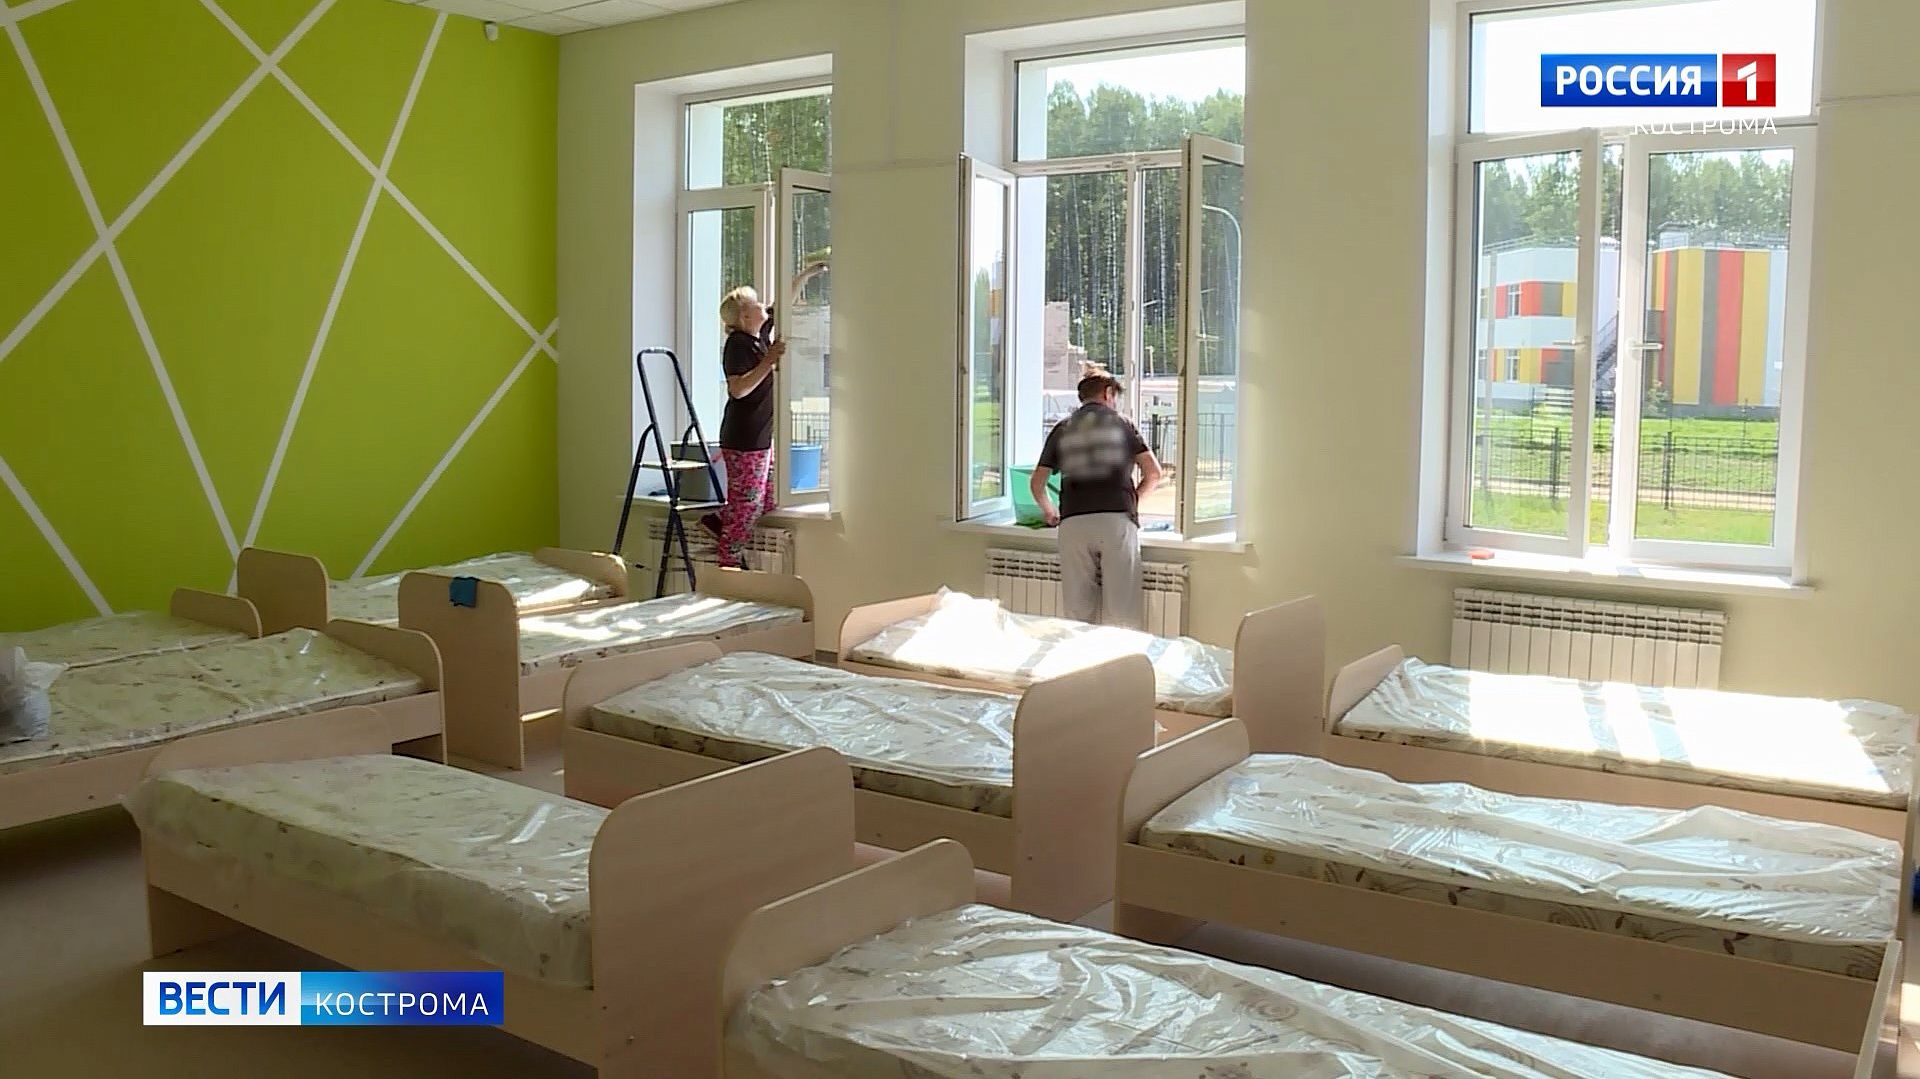 В новой костромской школе для учеников подготовили даже кровати